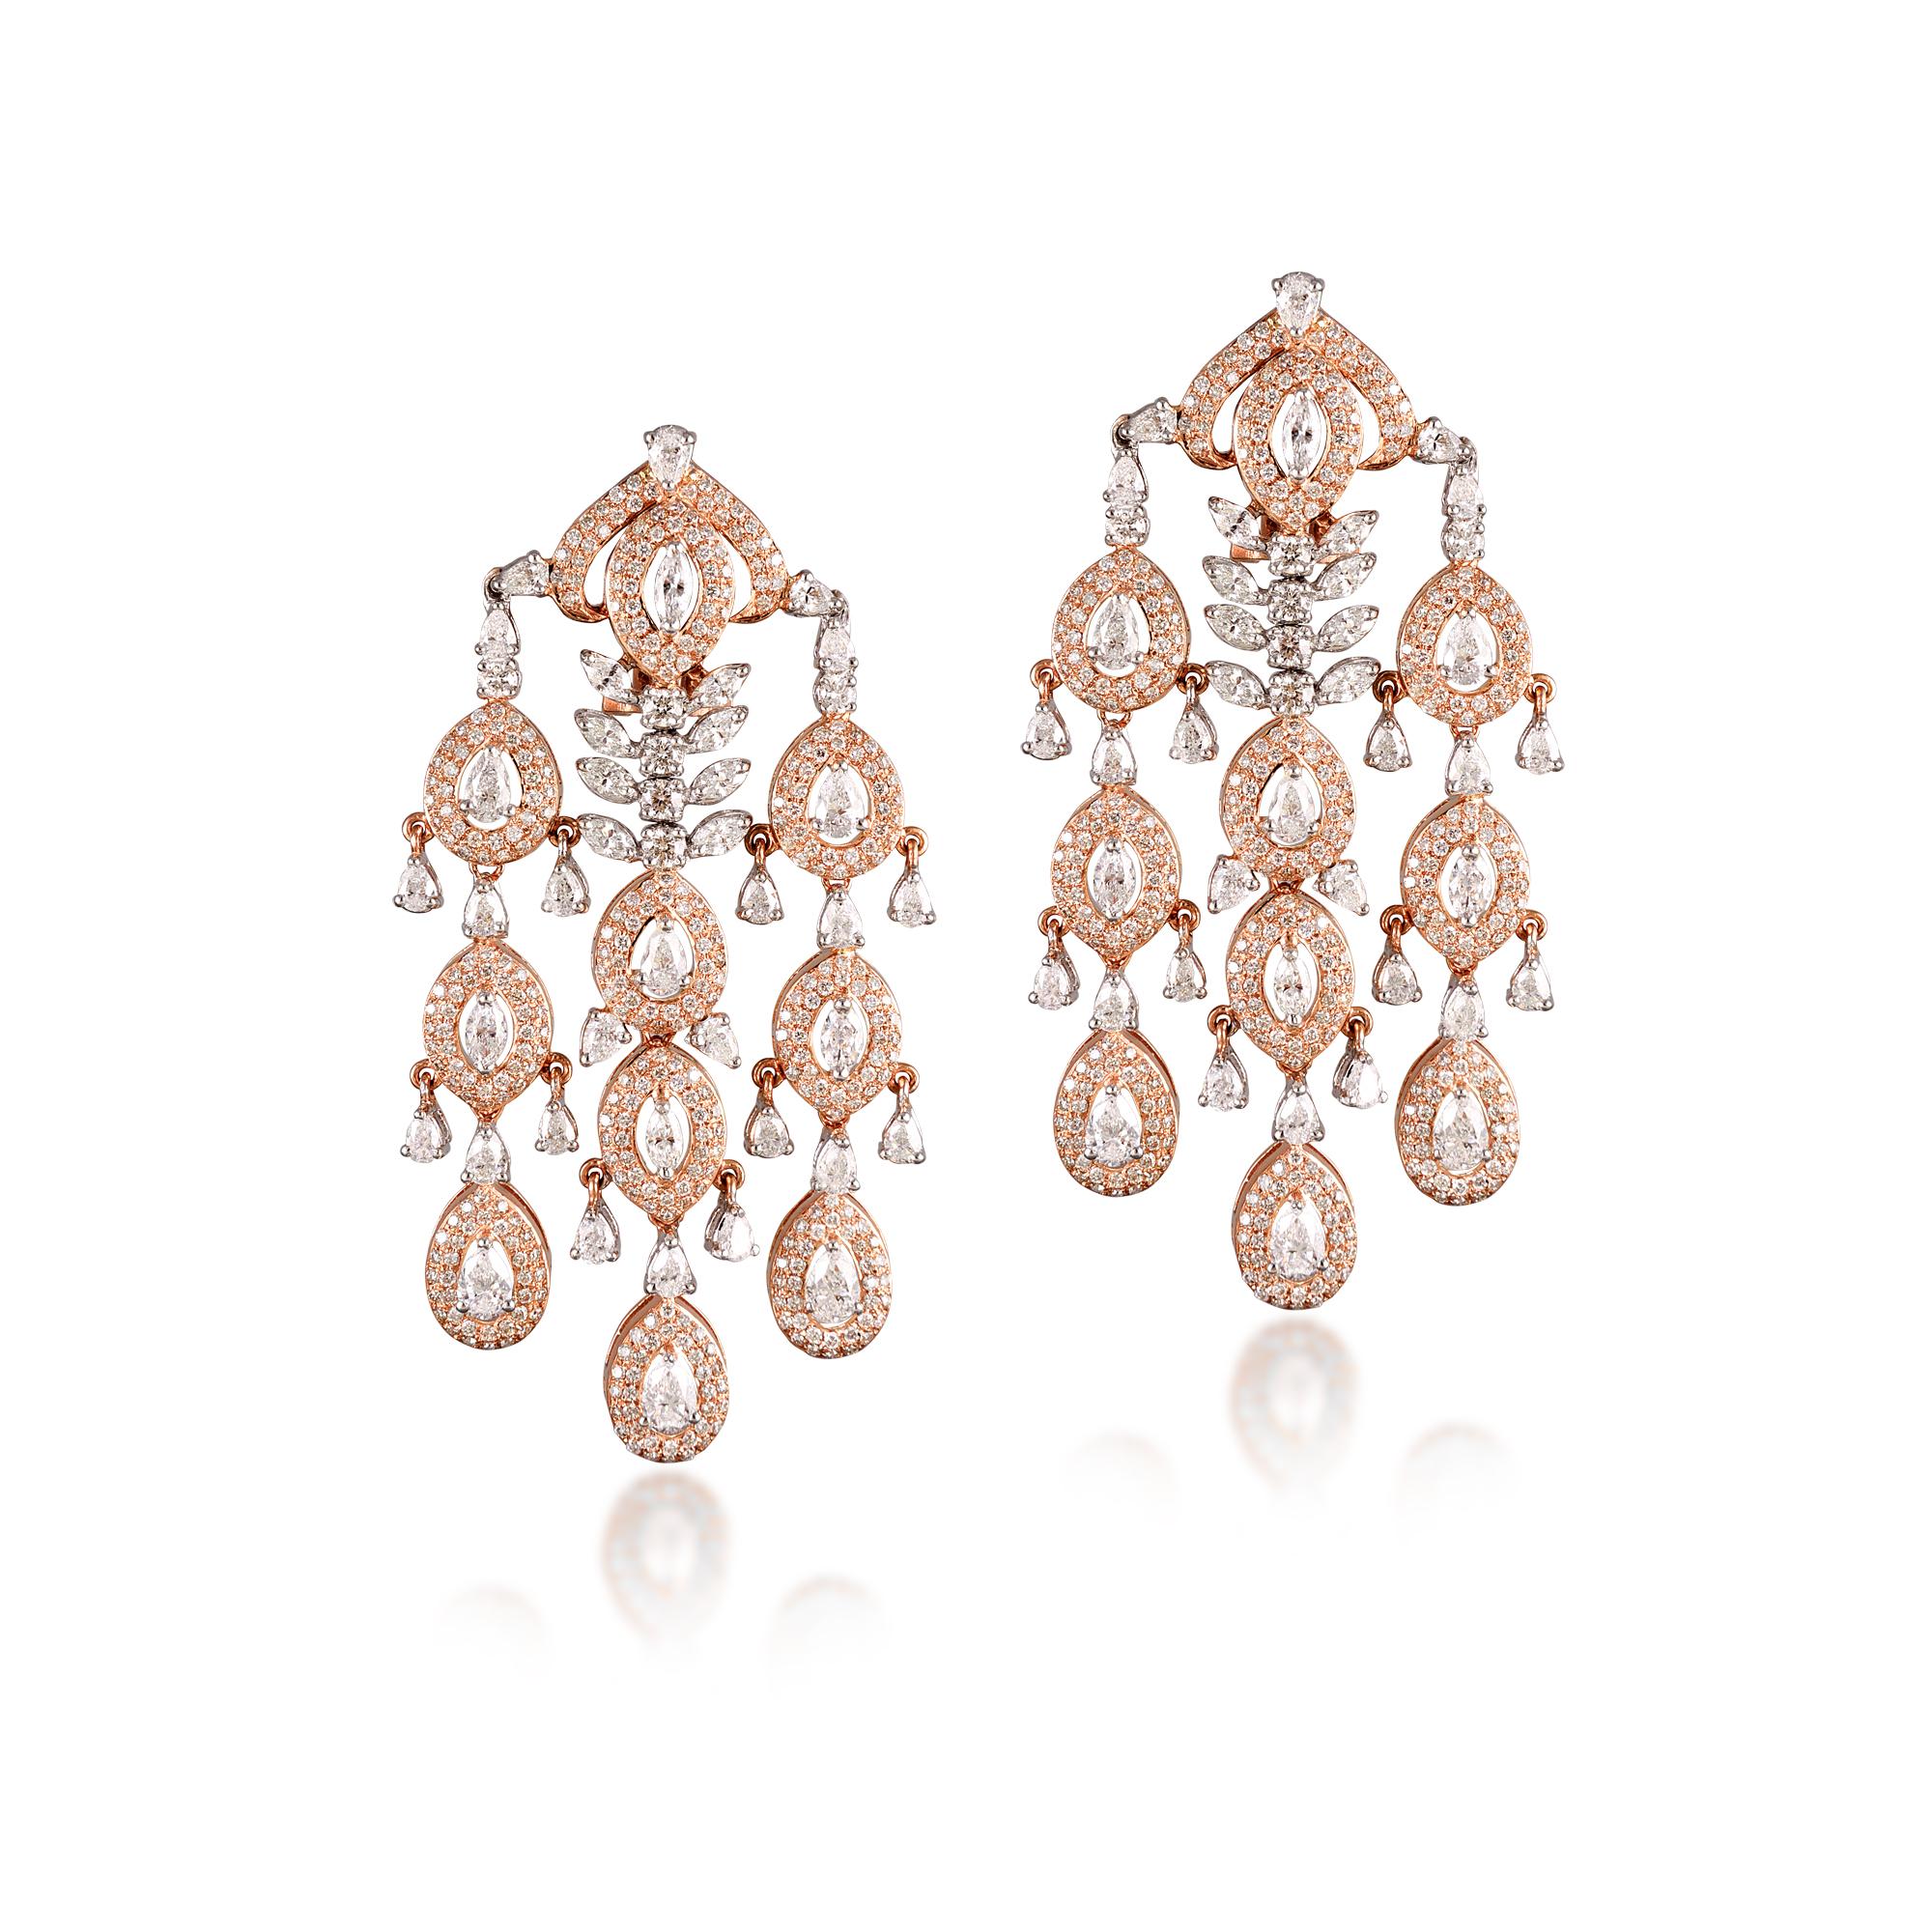 Contemporary 18 Karat Rose Gold White Gold White Diamond Chandelier Earrings For Sale